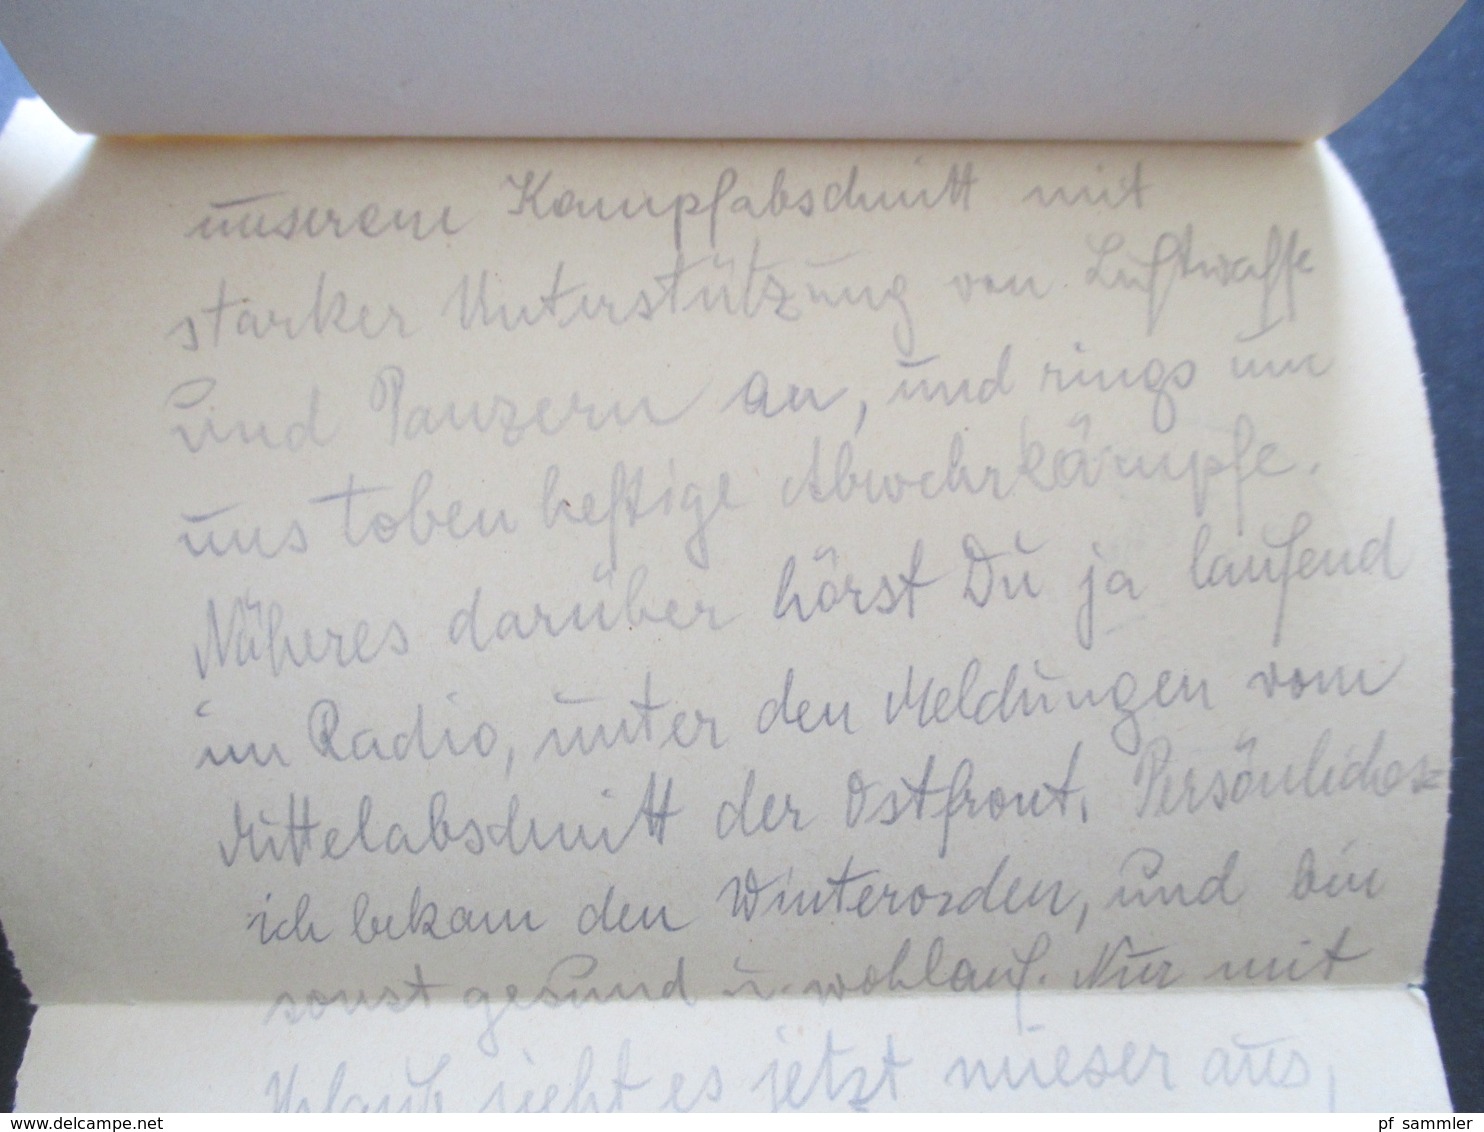 3.Reich 1942 Feldpost Brief aus Russland nach Brünn im Protektorat Schreiber berichtet von Abwehrkämpfen und Winterorden